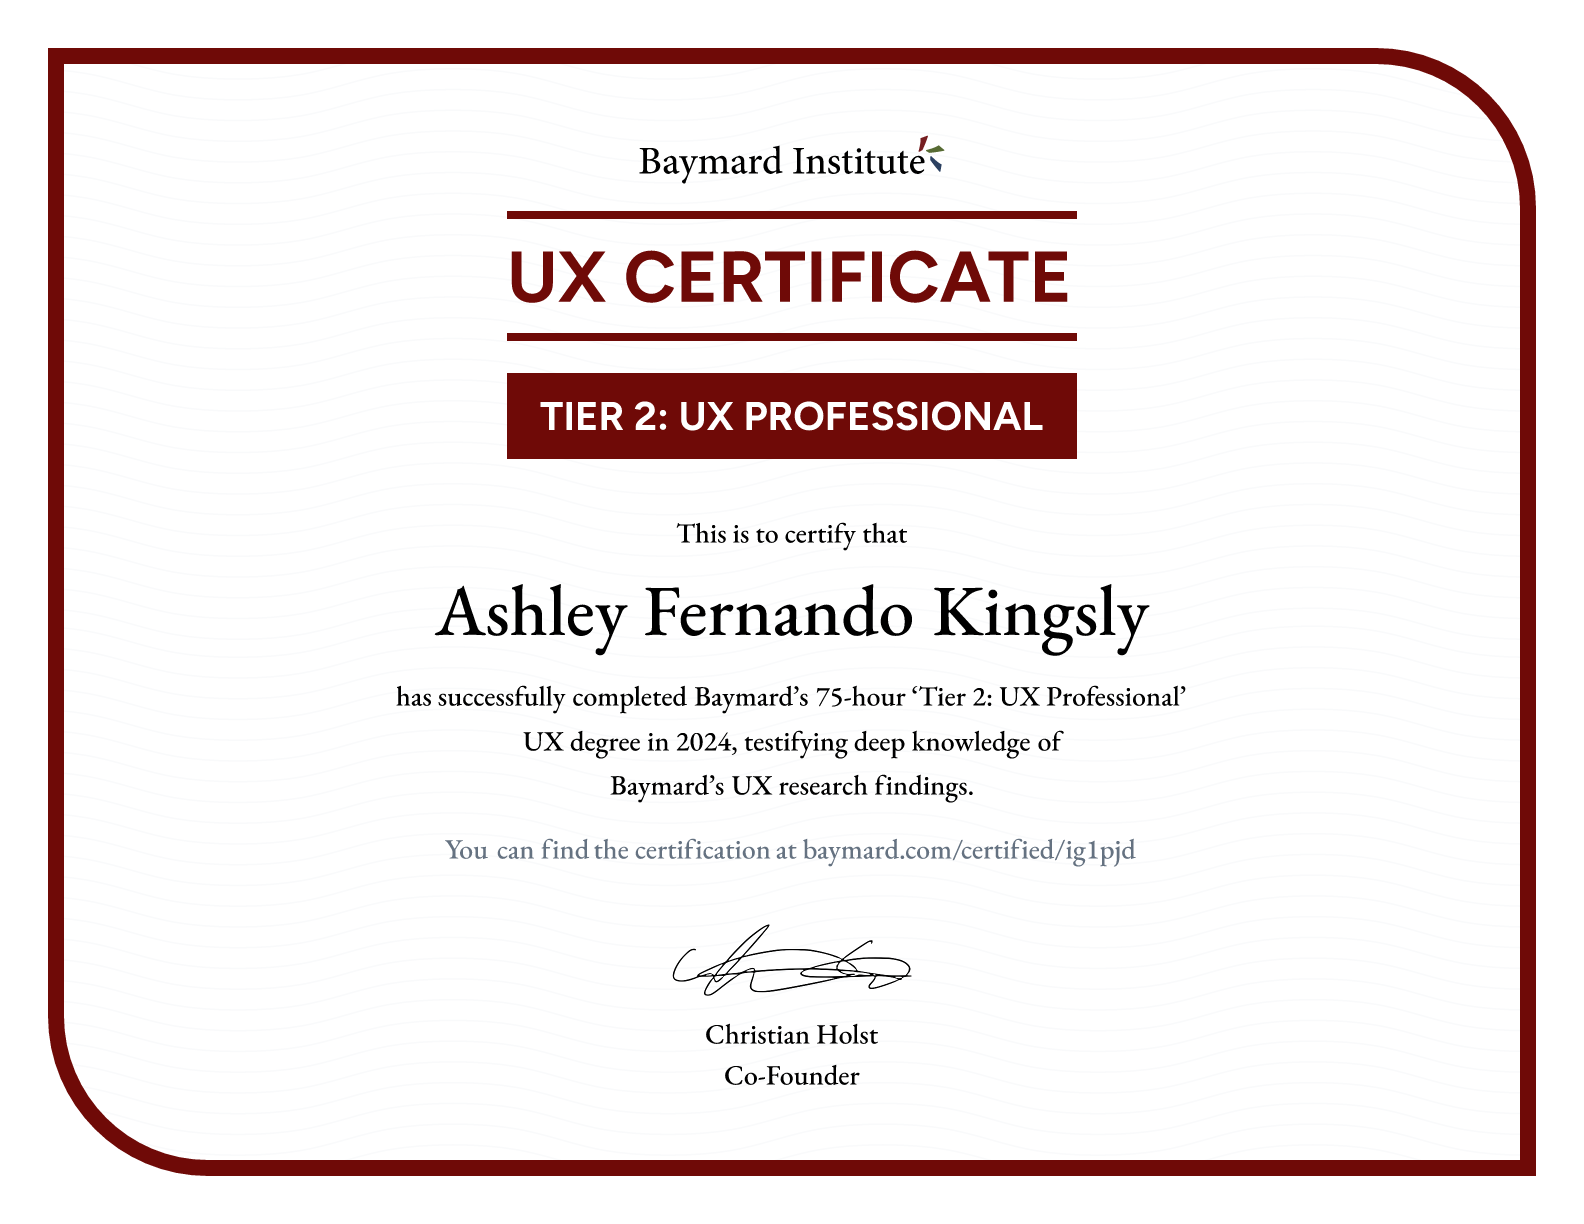 Ashley Fernando Kingsly’s certificate